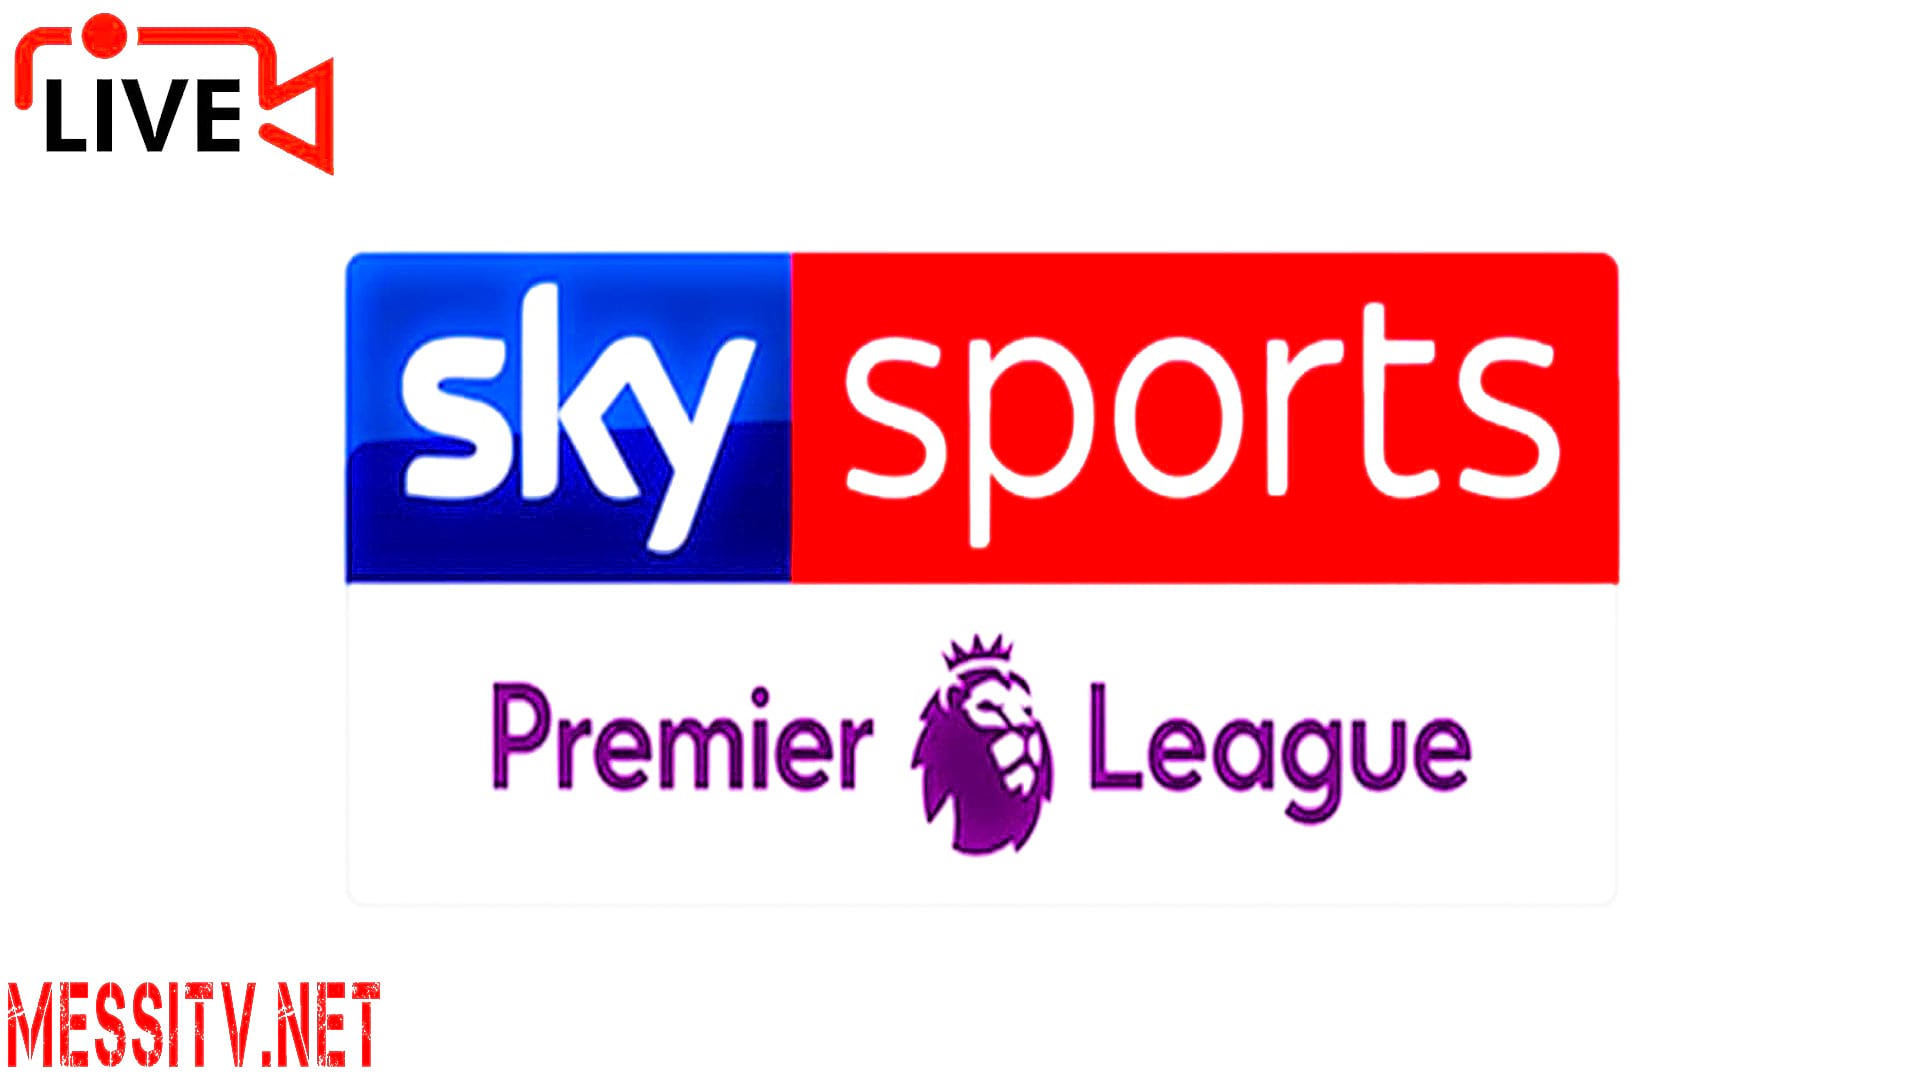 Sky sports live streaming. Sky Sports logo. Студия Sky Sports. Студия Sky Sports Premier League.